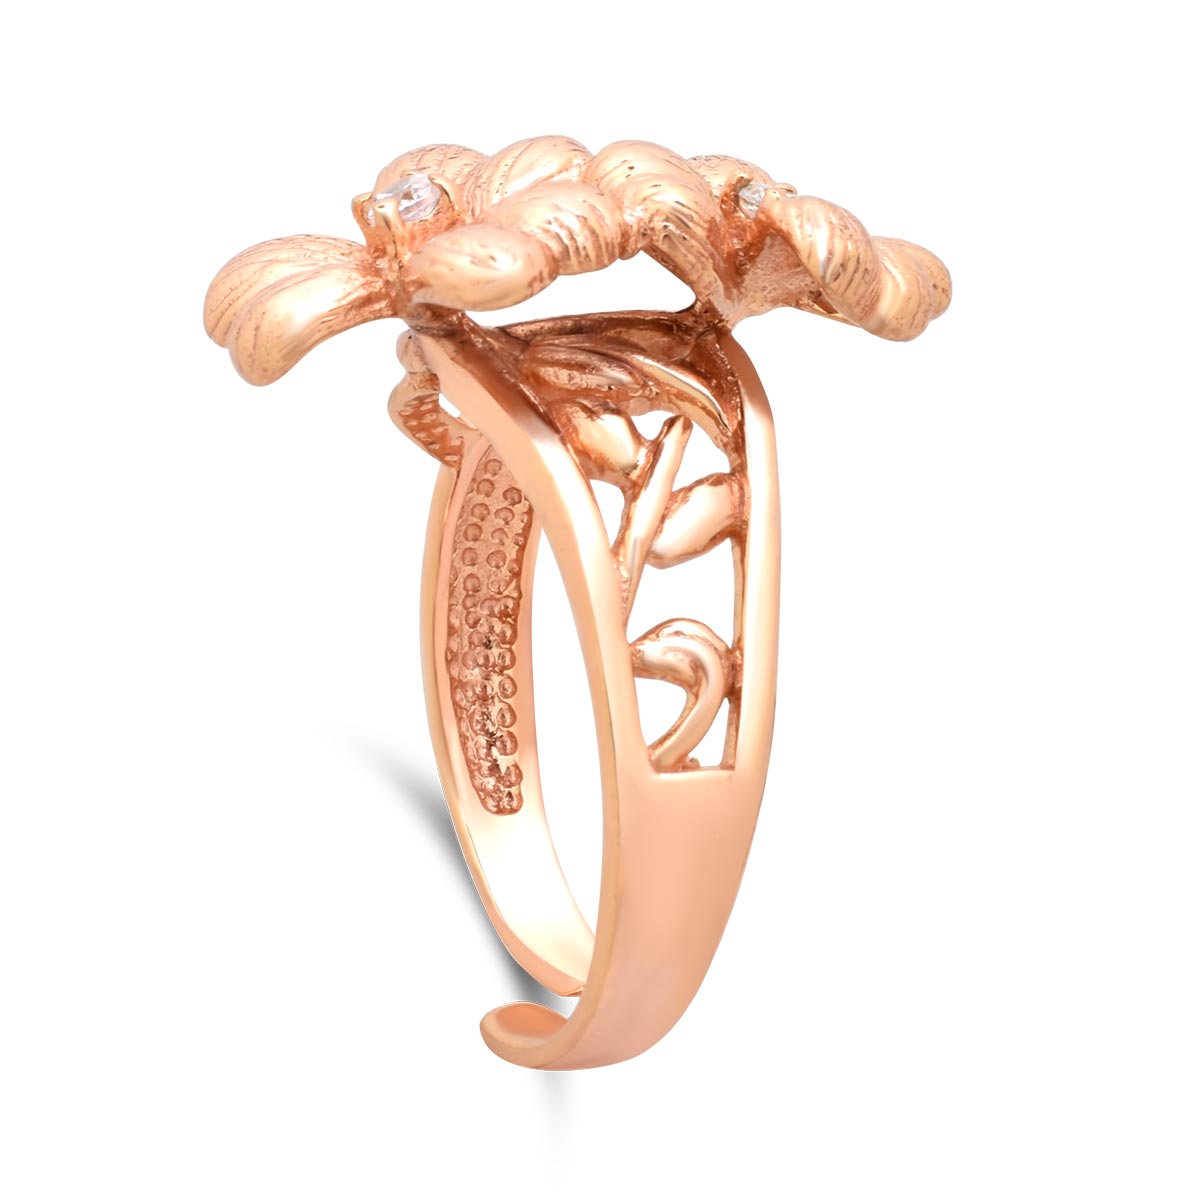 Ασημένιο δαχτυλίδι με ροζ επιχρύσωση